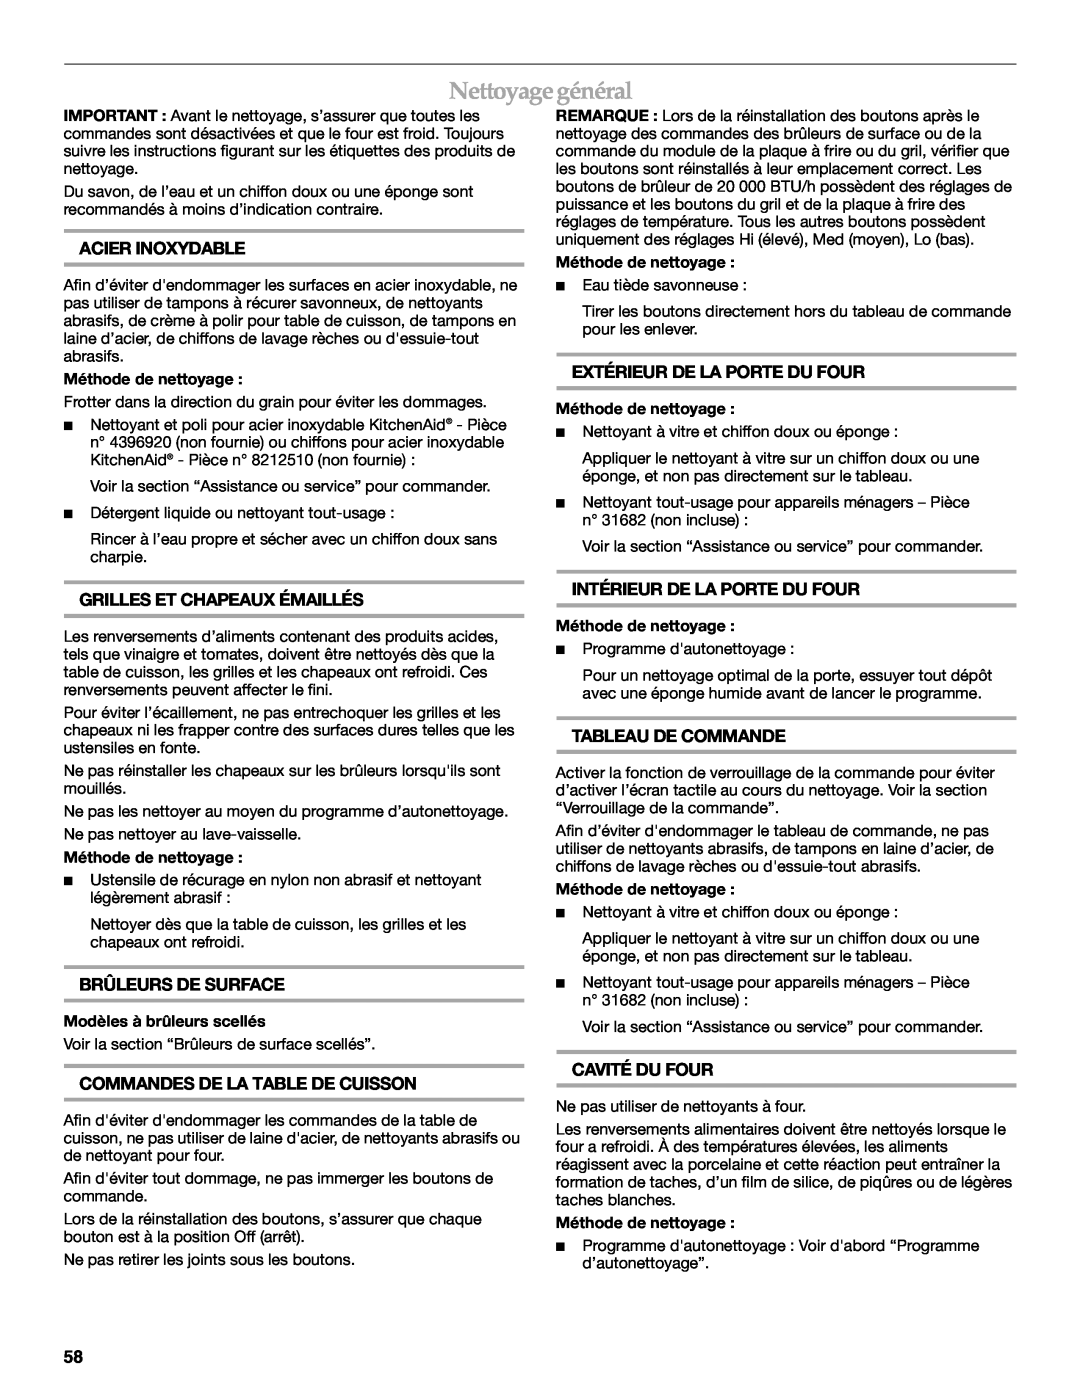 KitchenAid KDRS407 manual Nettoyage général, Acier Inoxydable, Extérieur De La Porte Du Four, Grilles Et Chapeaux Émaillés 